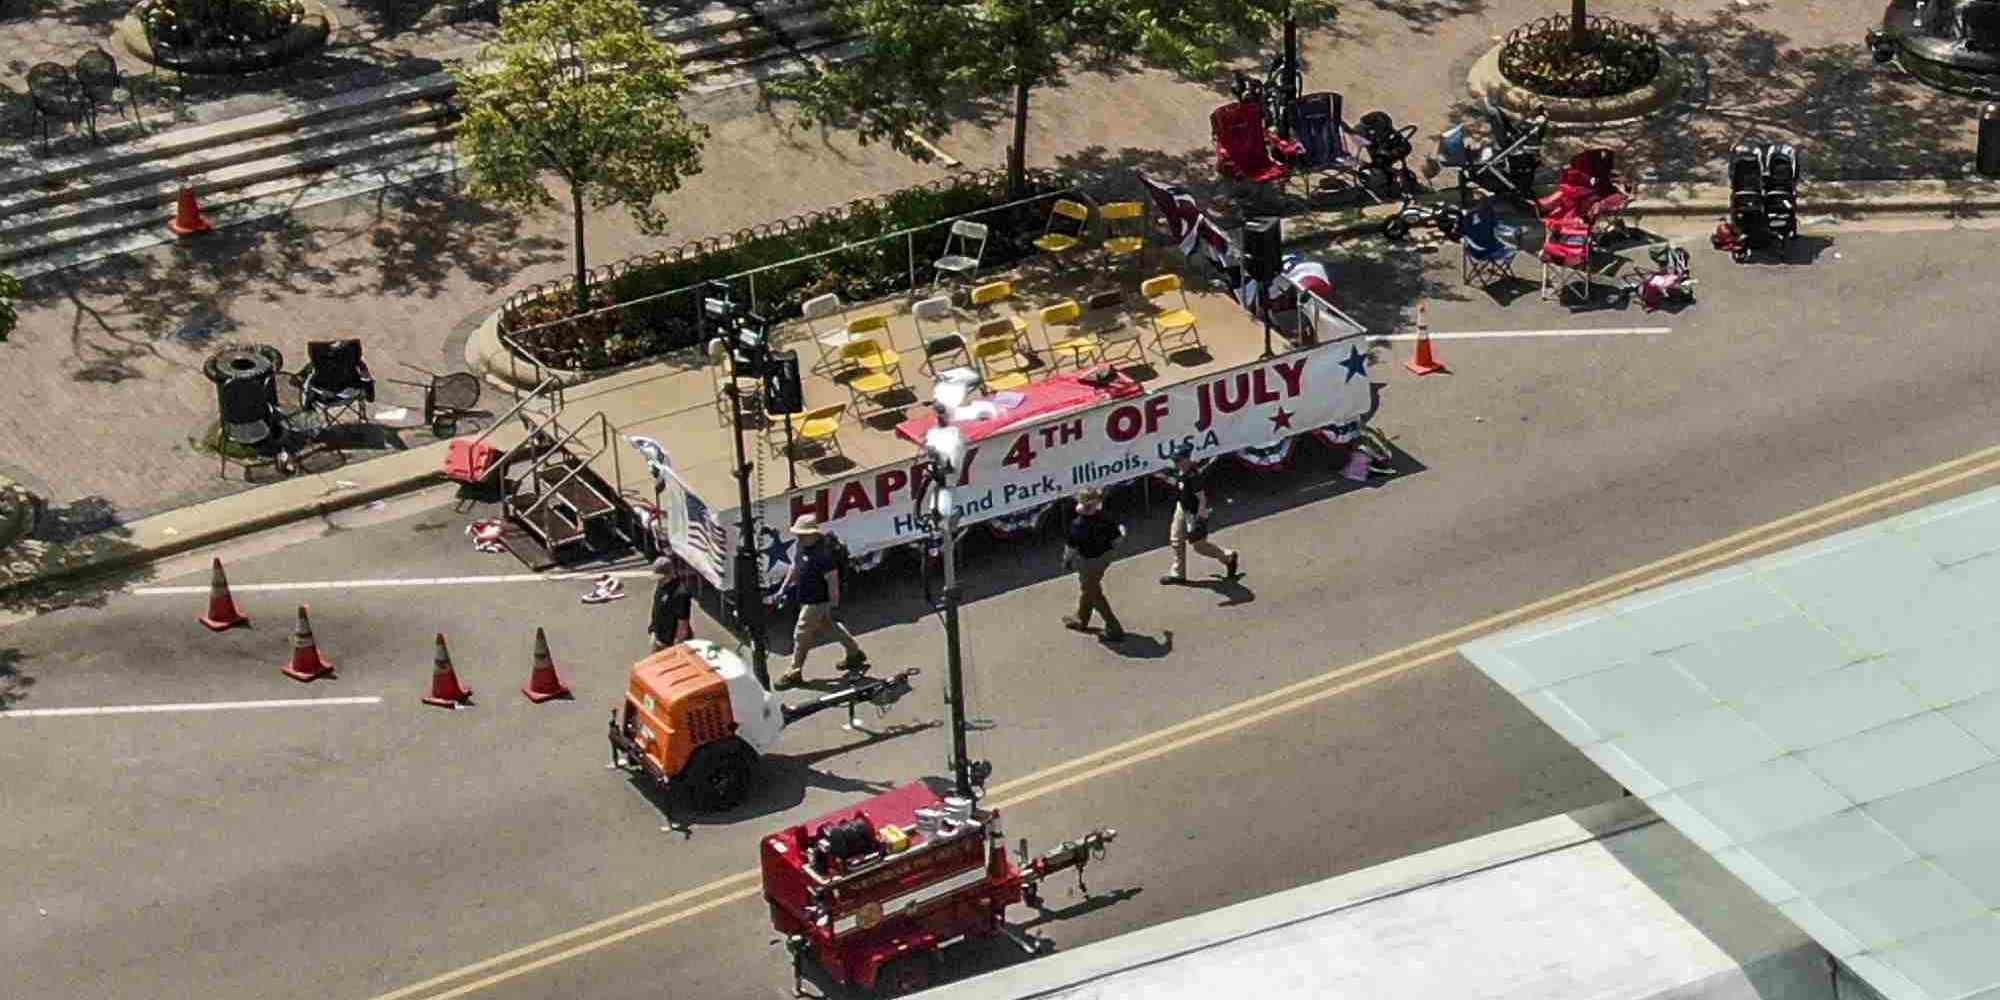 Το σημείο του μακελειού κατά τη διάρκεια εορτασμού και παρέλασης της 4ης Ιουλίου στο Χάιλαντ Παρκ στο Σικάγο